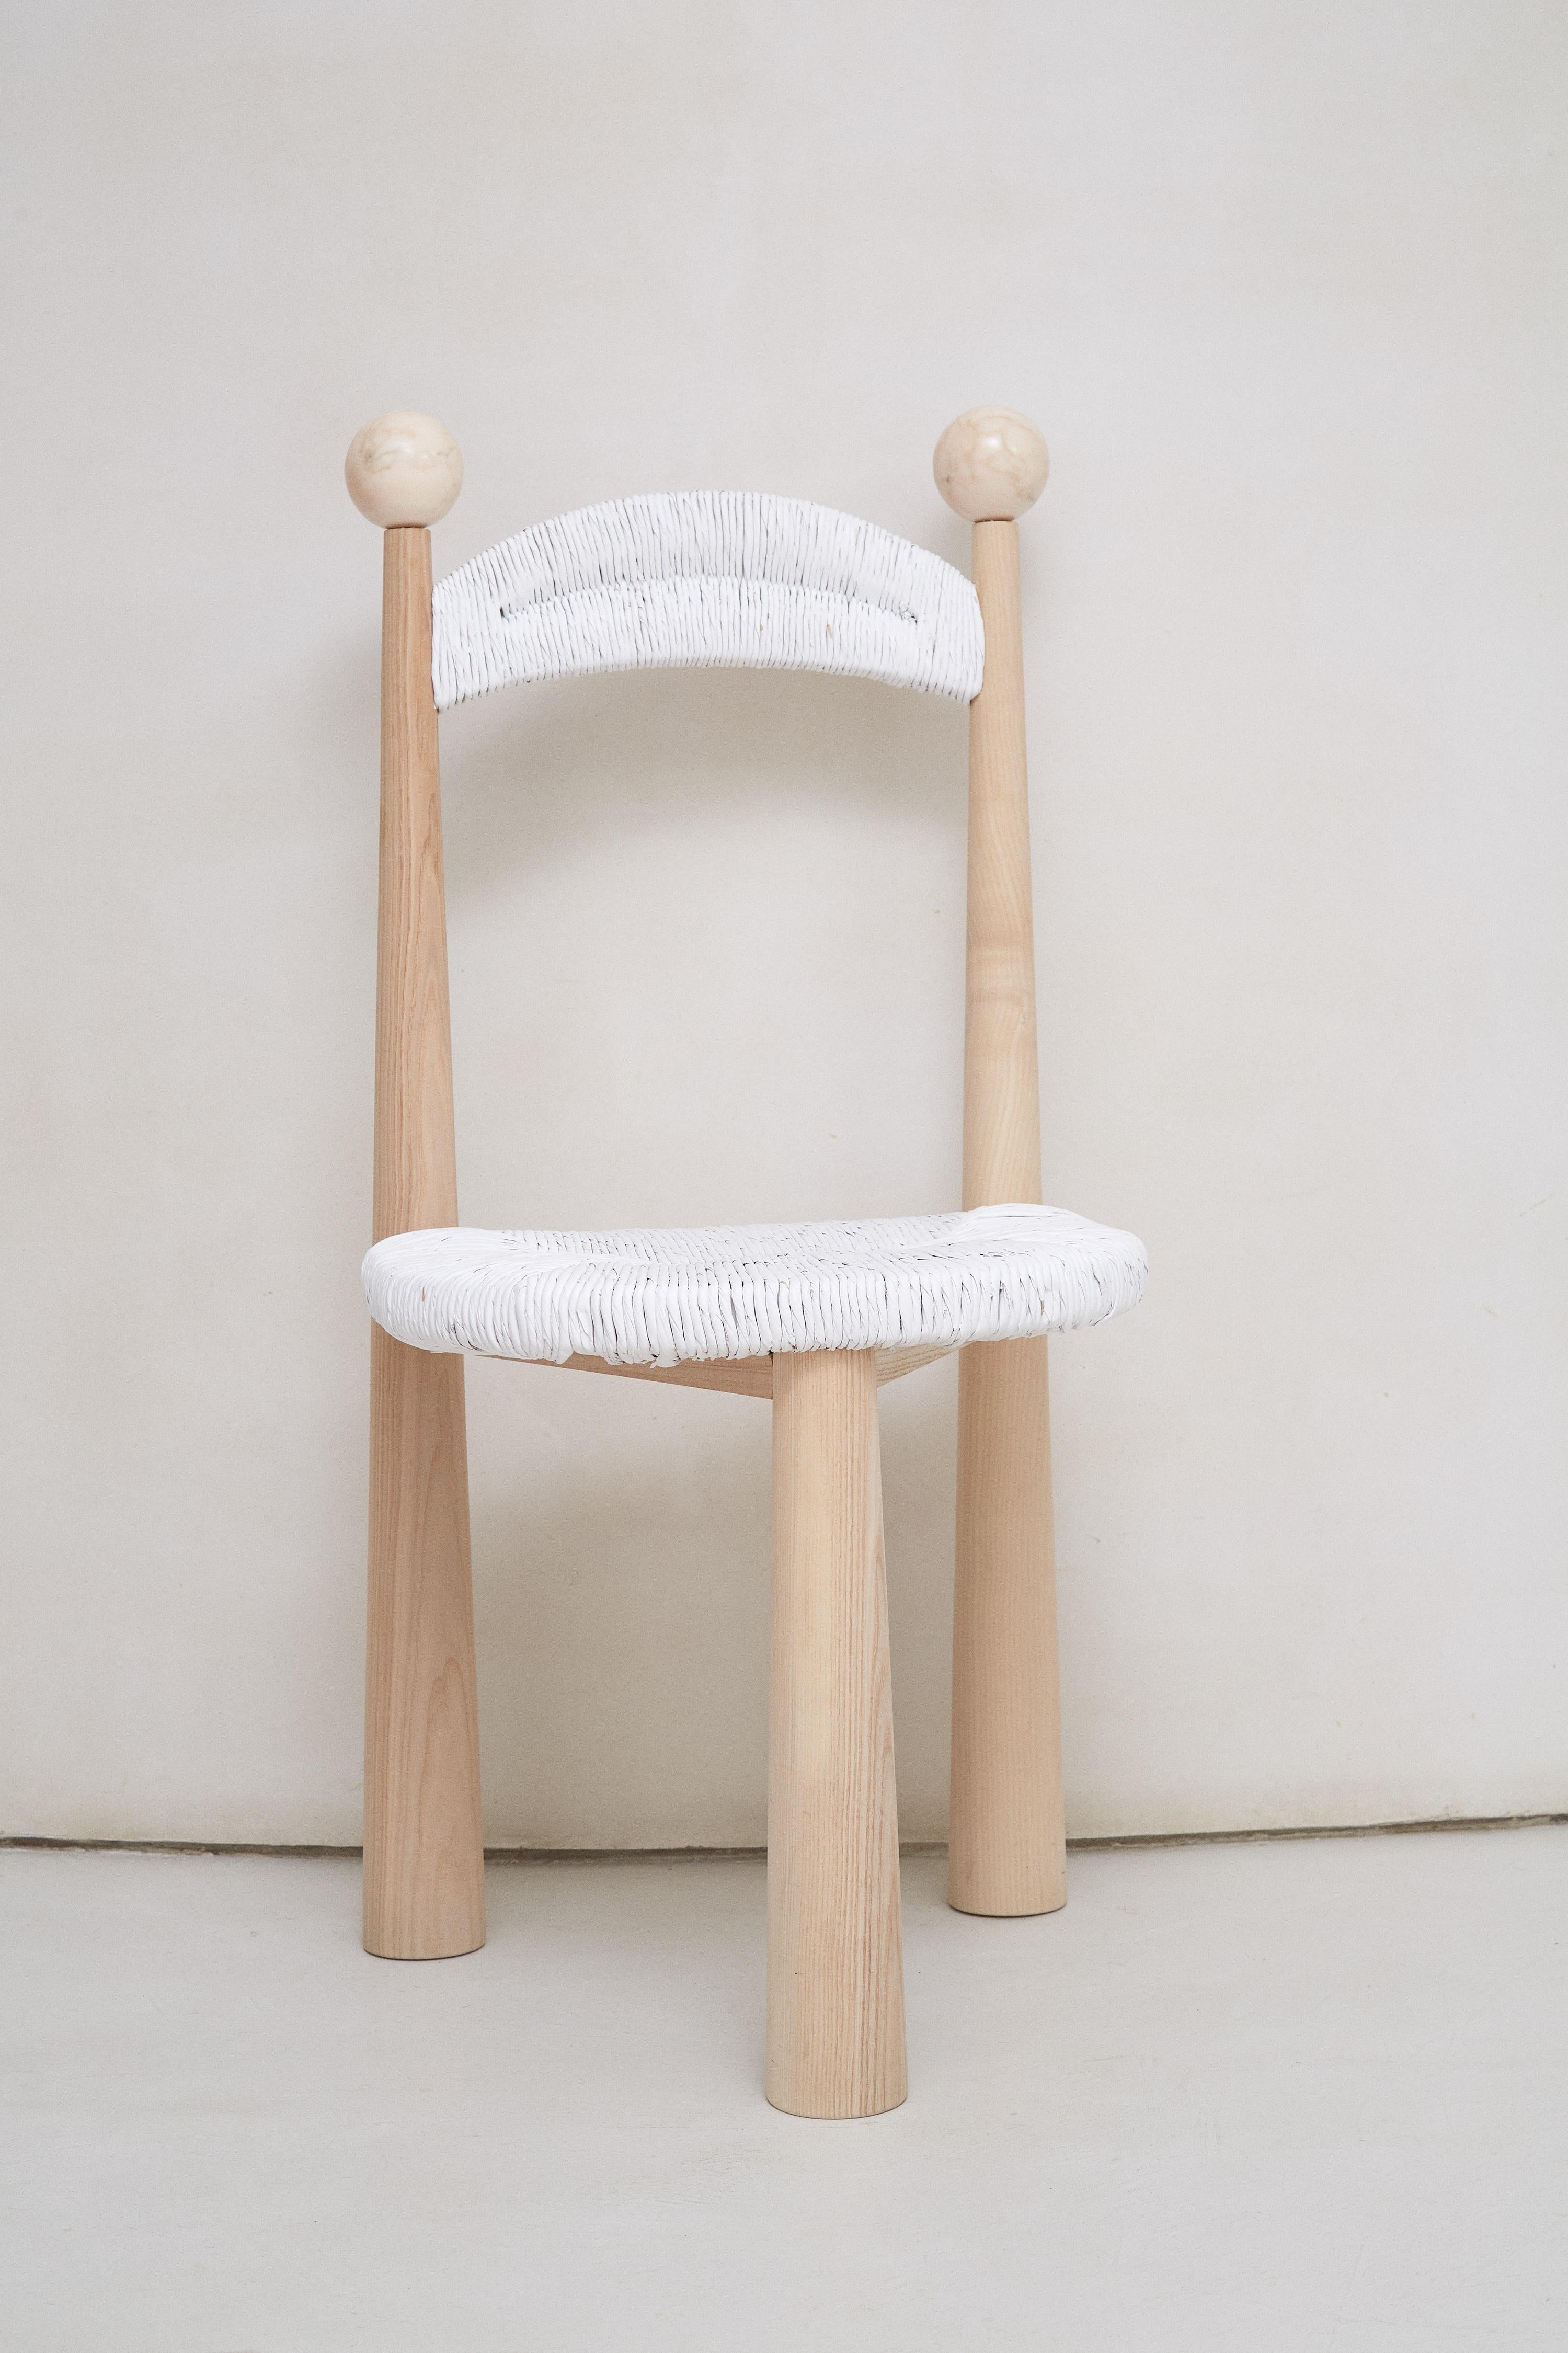 Newcastle-Stuhl von Patricia Bustos de la Torre
Abmessungen: T 47 x B 48 x H 91 cm.
MATERIALIEN: Holz und Plüsch.

Newcastle Chair ist ein dreibeiniger Holzstuhl mit einer Sitzfläche aus Rattan, der jedes Esszimmer verwandelt. Dieses perfekte